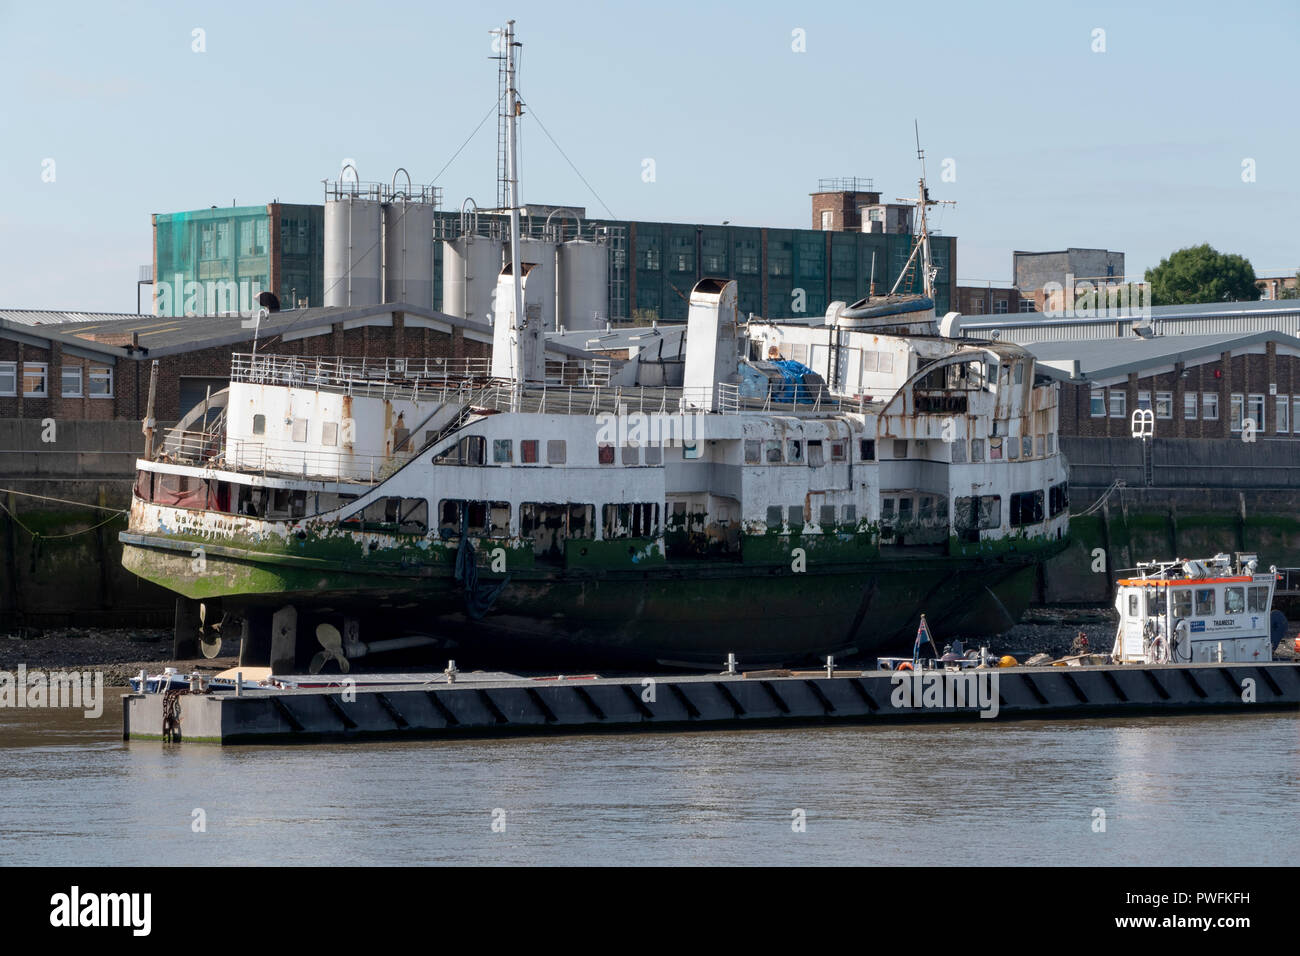 Le navire Iris Royal. L'un des Ferries Mersey Liverpool maintenant ancrée sur la Tamise à Londres. Des plans sont en cours pour le convertir en un restaurant. Banque D'Images